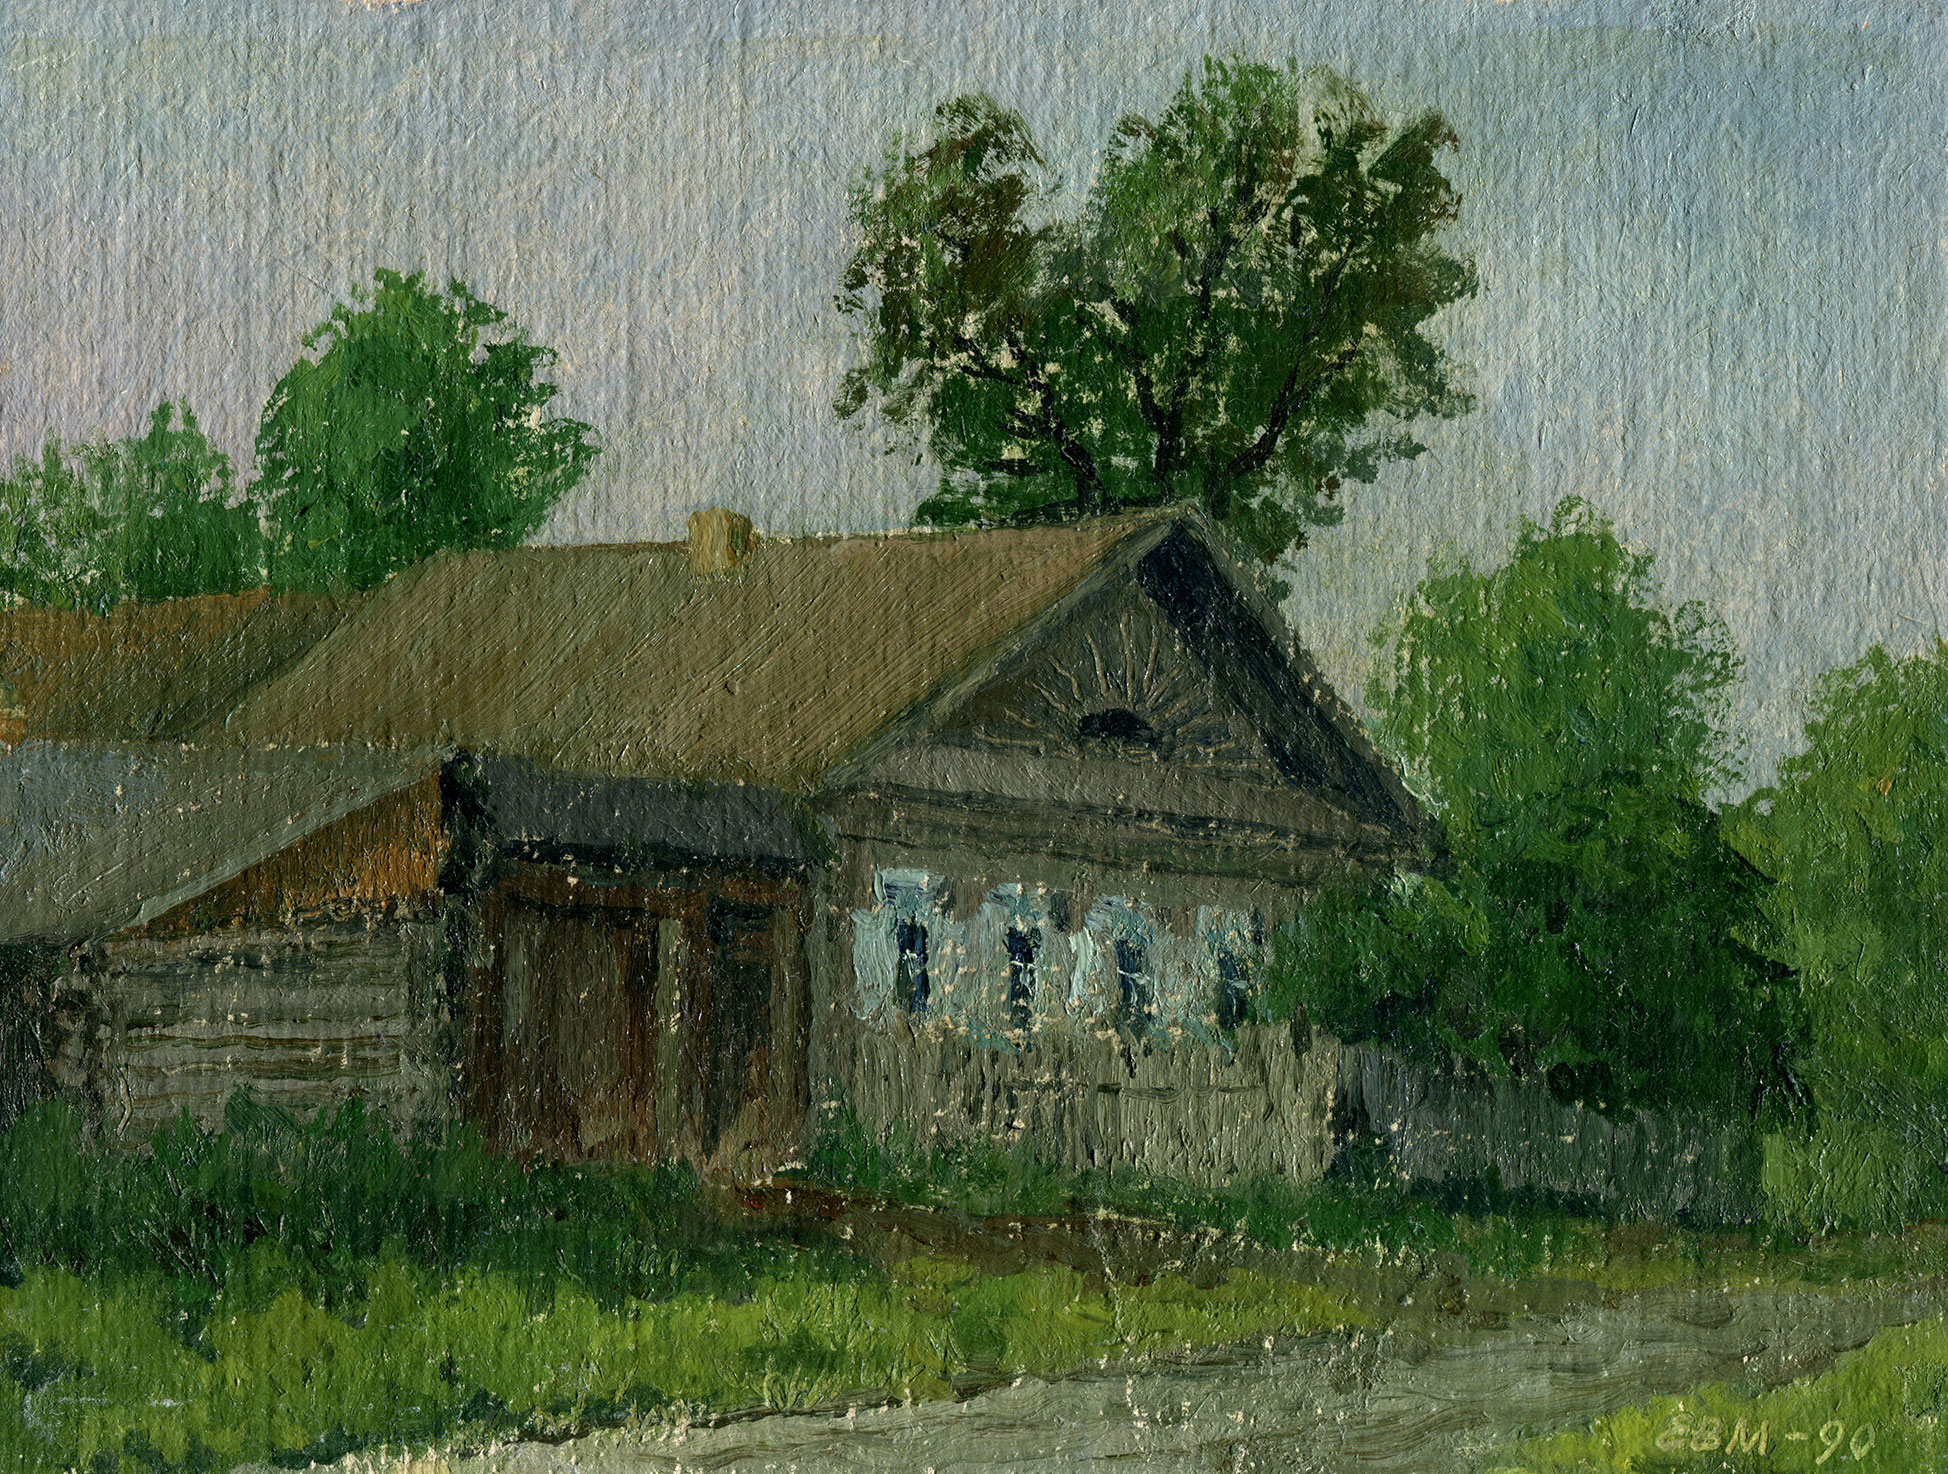 Poldnevaya, Soveskaya Street - 1, Valentin Efremov, Buy the painting Oil